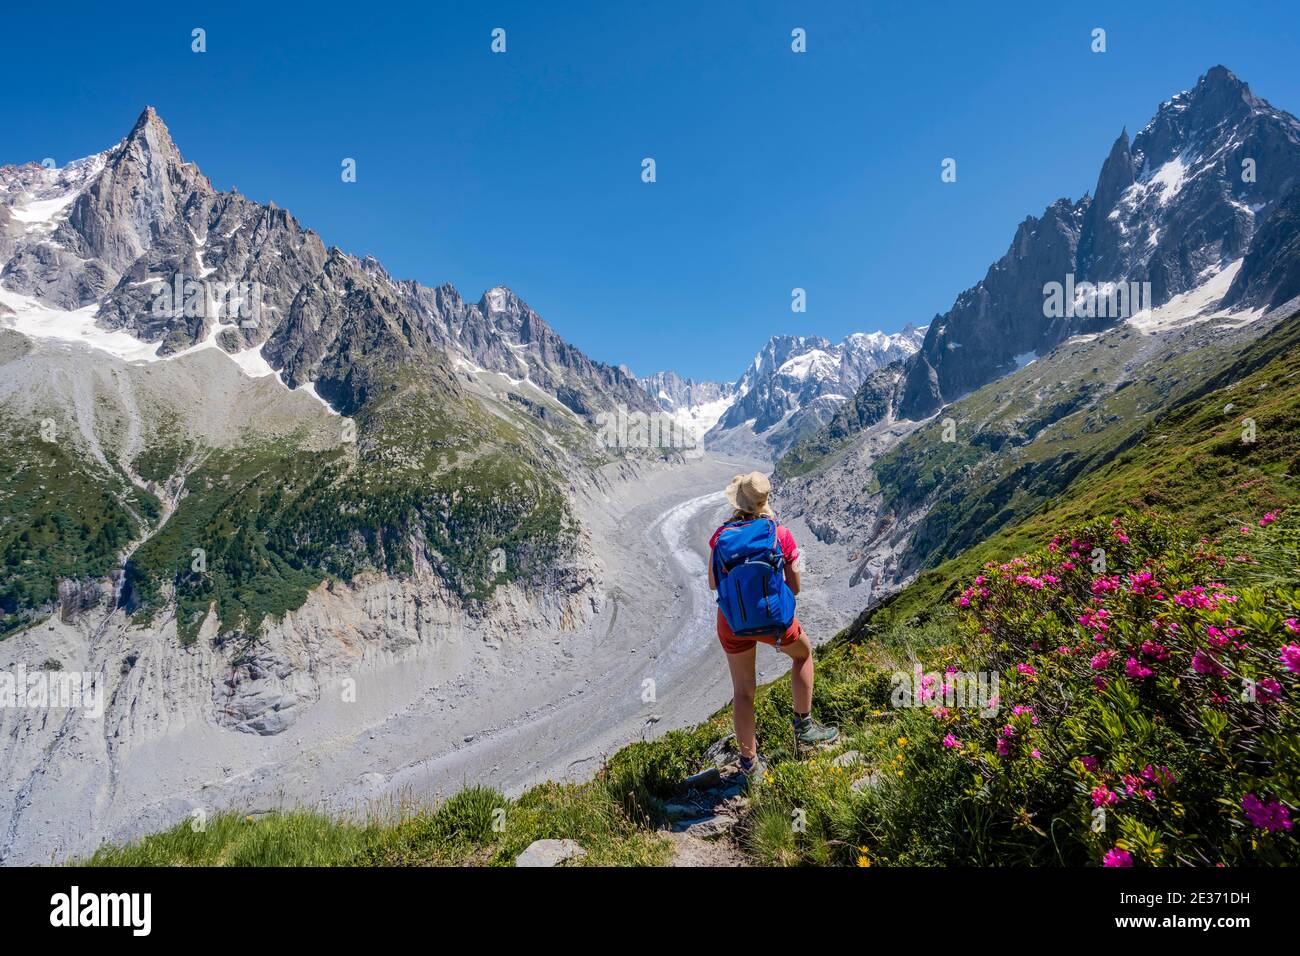 Scalatore su sentiero escursionistico, Grand Balcon Nord, lingua del ghiacciaio Mer de Glace, dietro Grandes Jorasses, massiccio del Monte Bianco, Chamonix, Francia Foto Stock